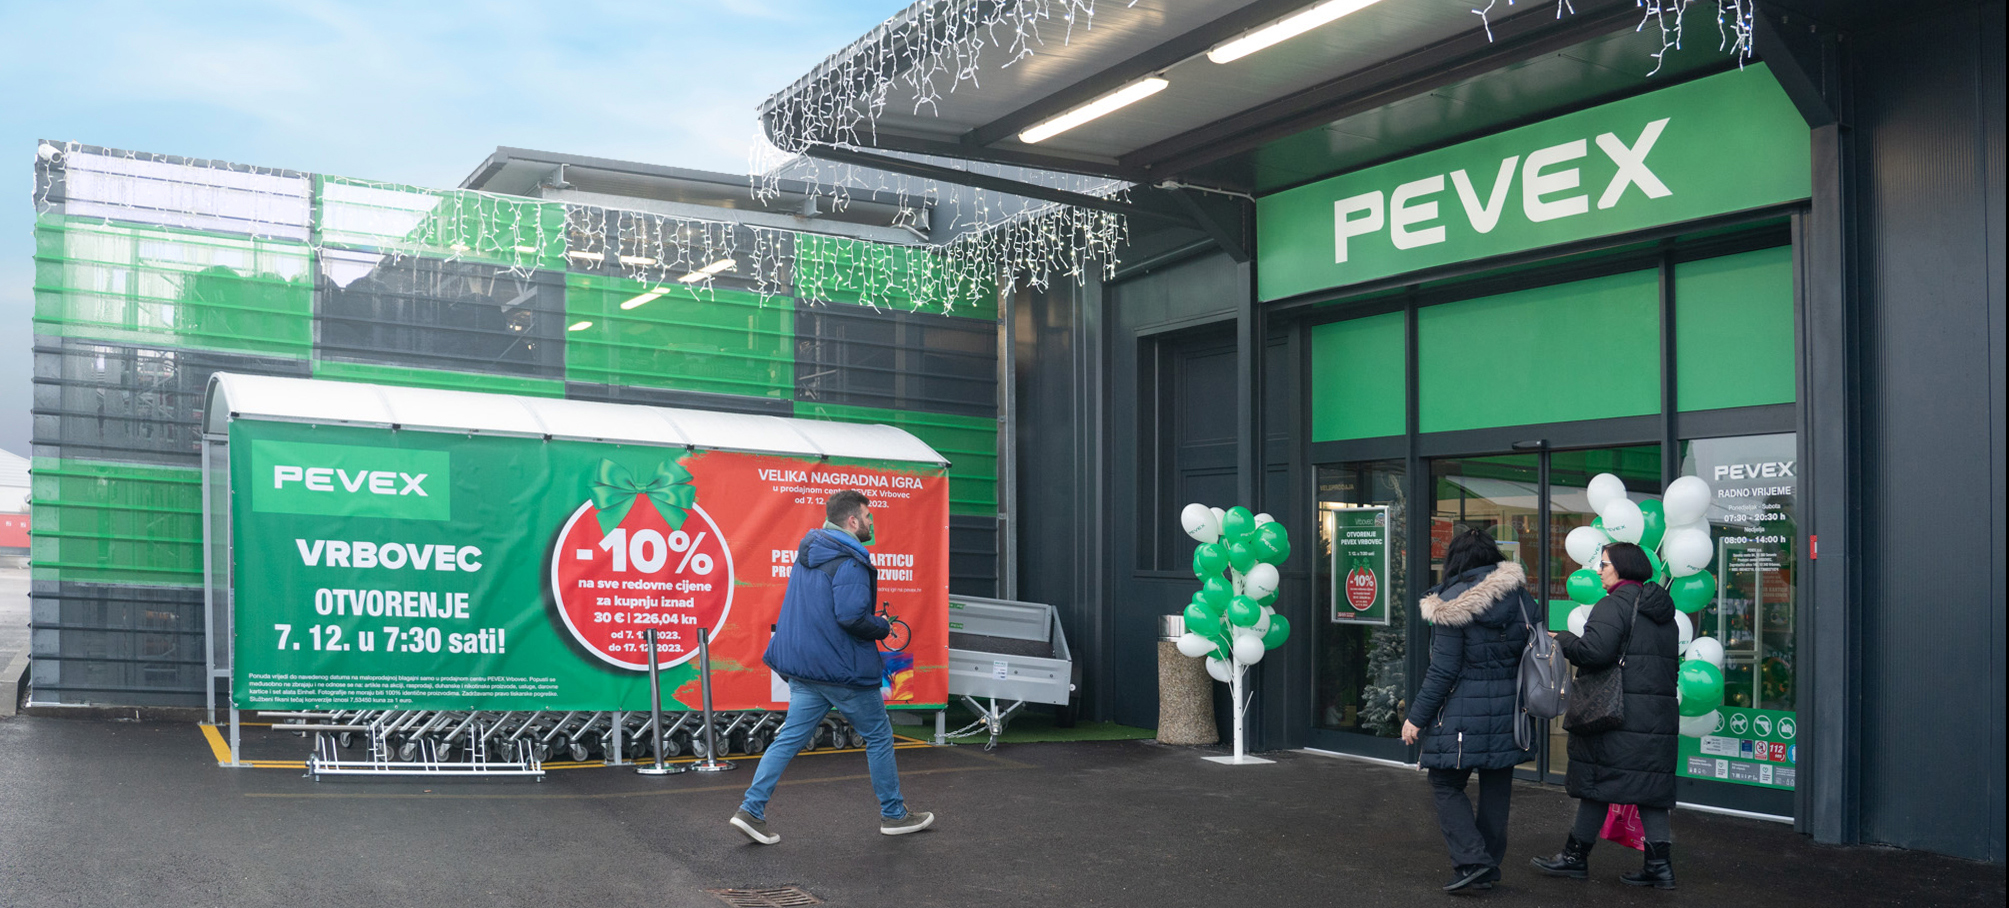 PEVEX otvorio novi prodajni centar u Vrbovcu